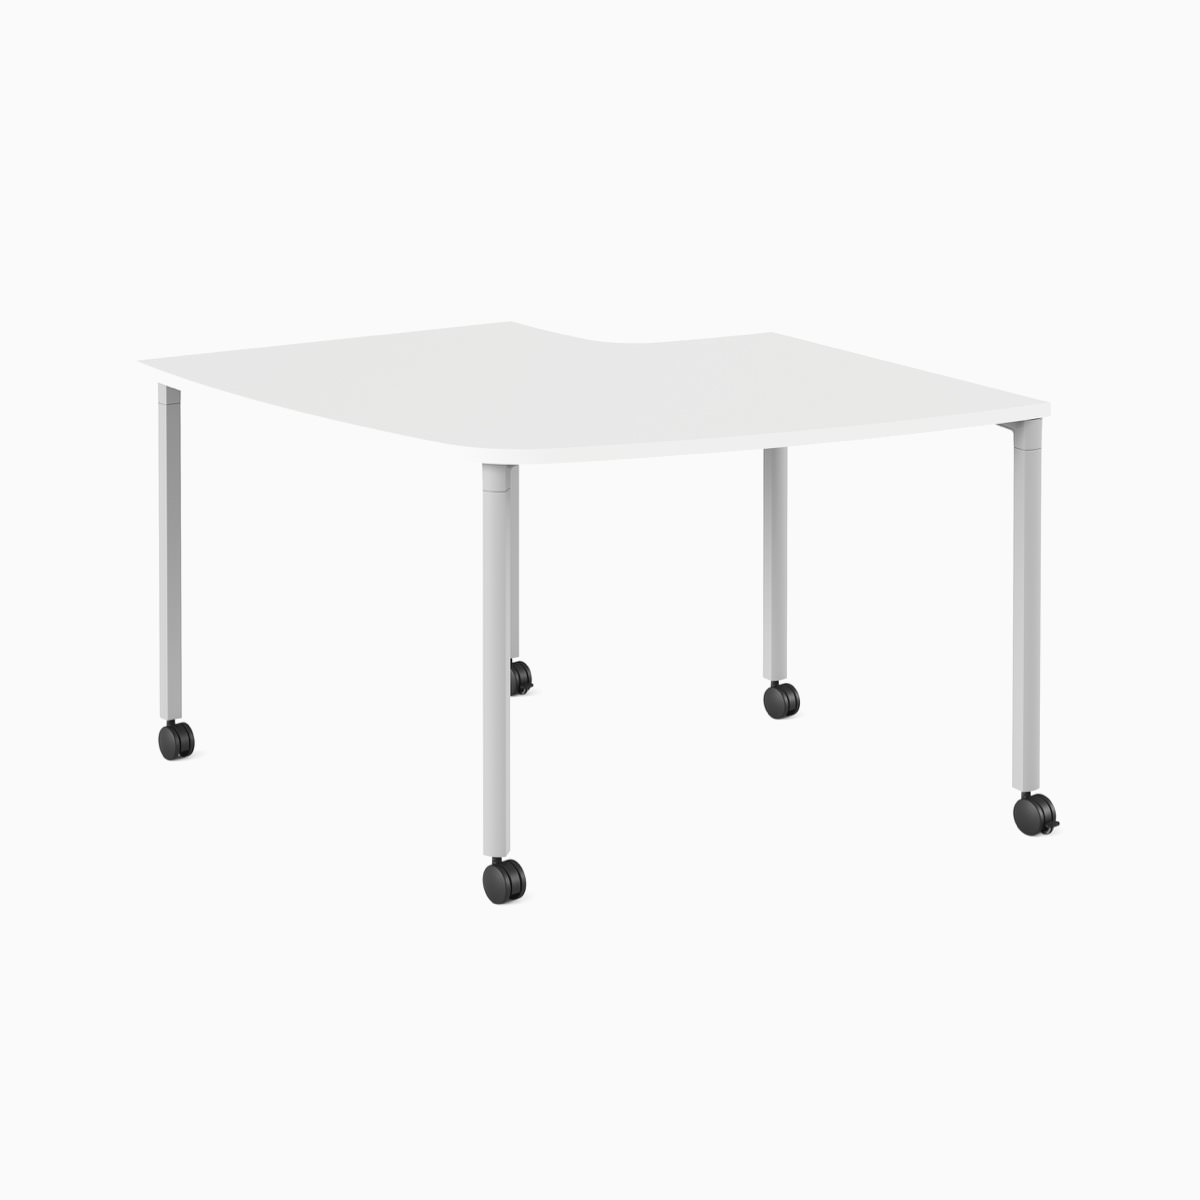 Weißer, gebogener Everywhere Table als Konferenztisch mit grauen Beinen und Laufrollen.